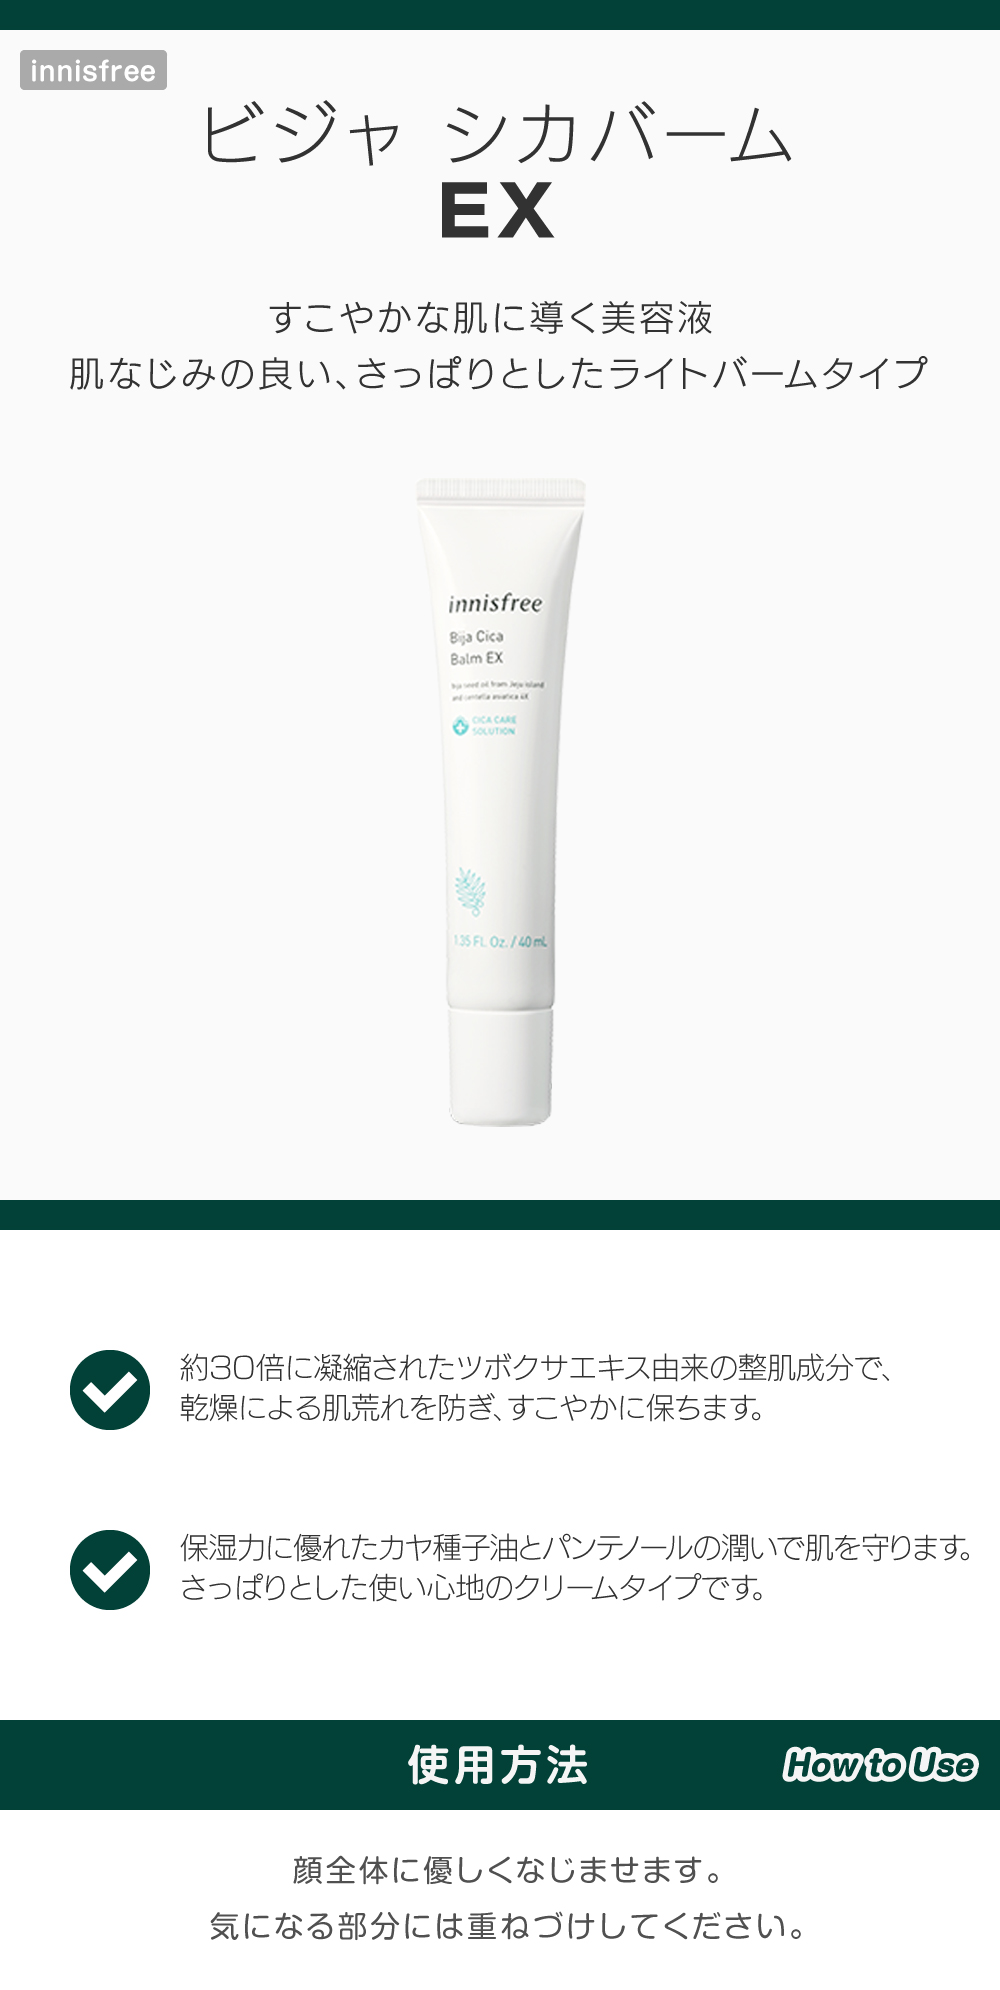 ビジャ シカバーム EX skin holic 日本公式 オンラインショップ